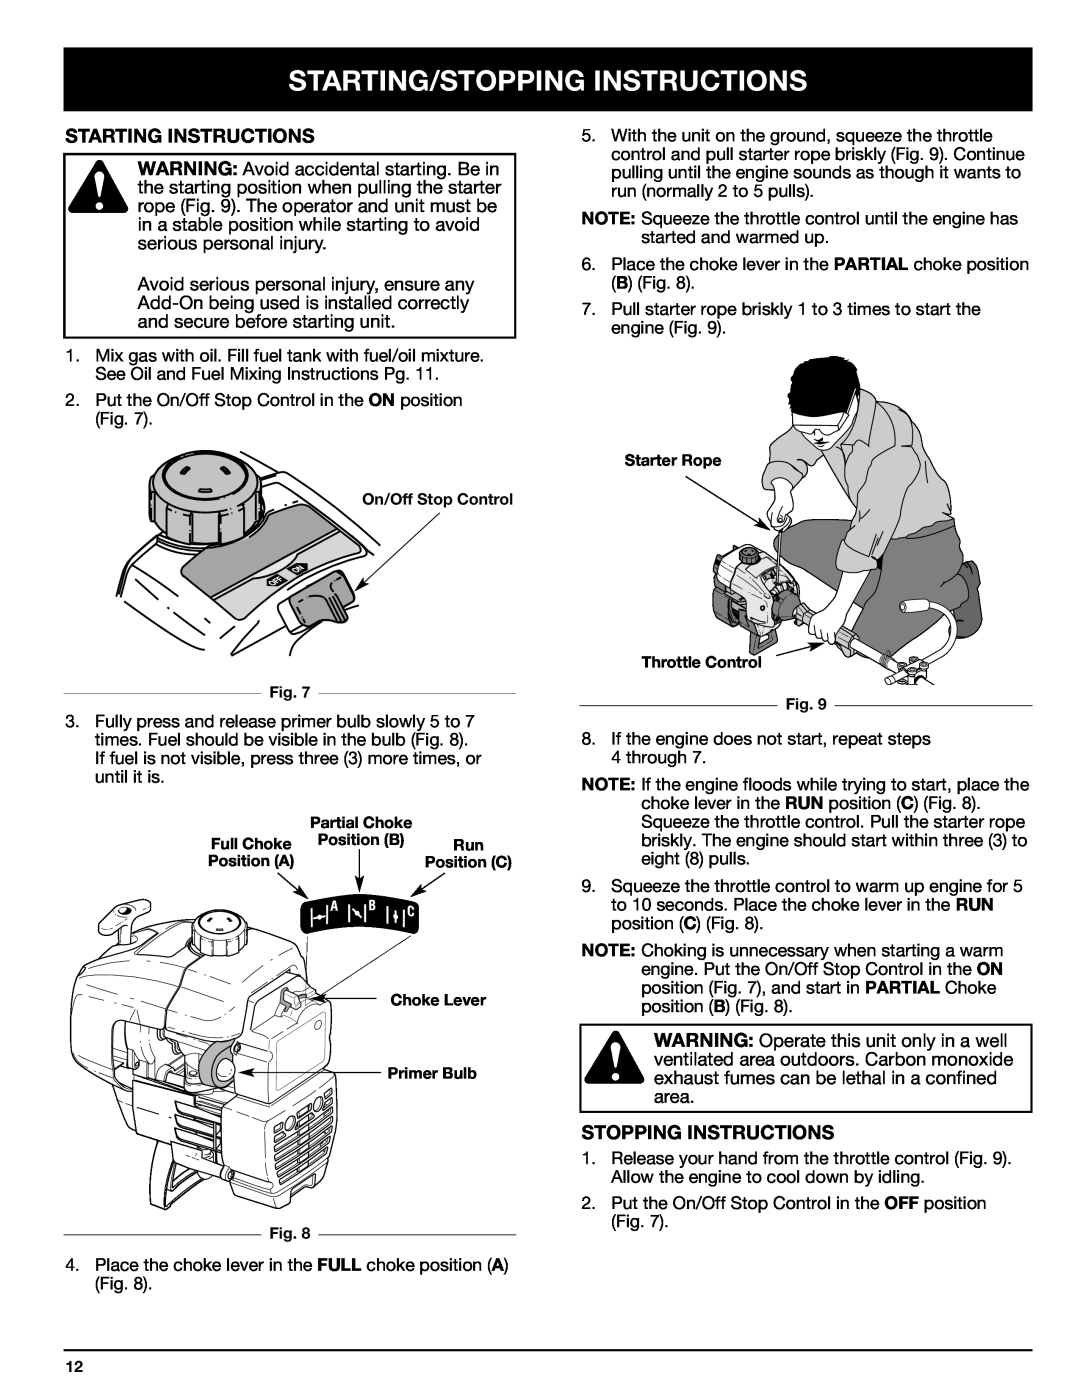 Ryobi 770rEB manual Starting/Stopping Instructions, Starting Instructions 